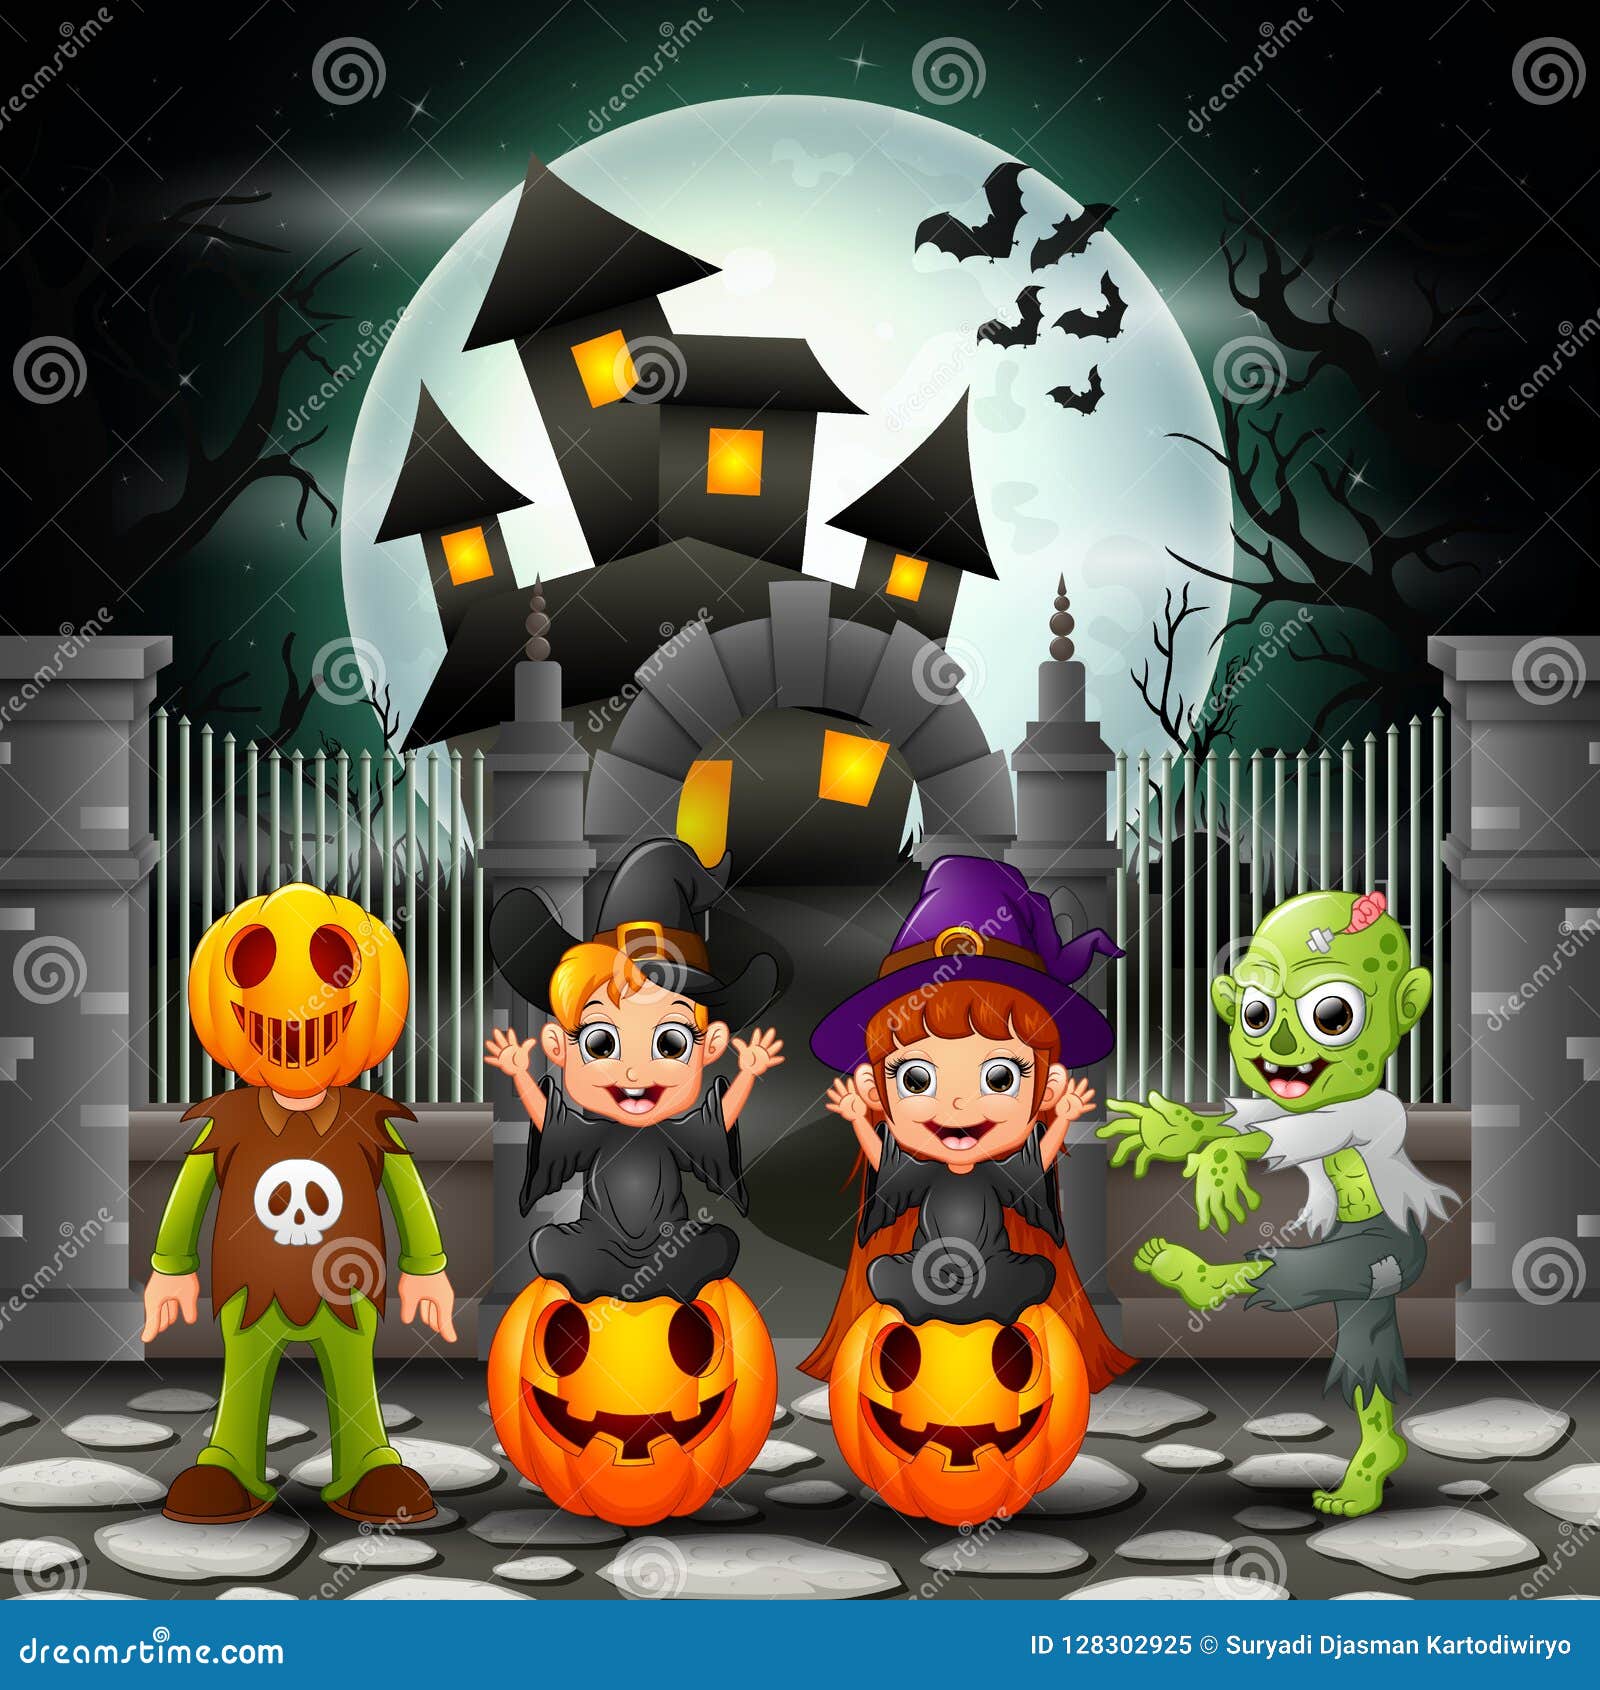 Cartoon Happy Kids with Halloween Background Stock Vector ...